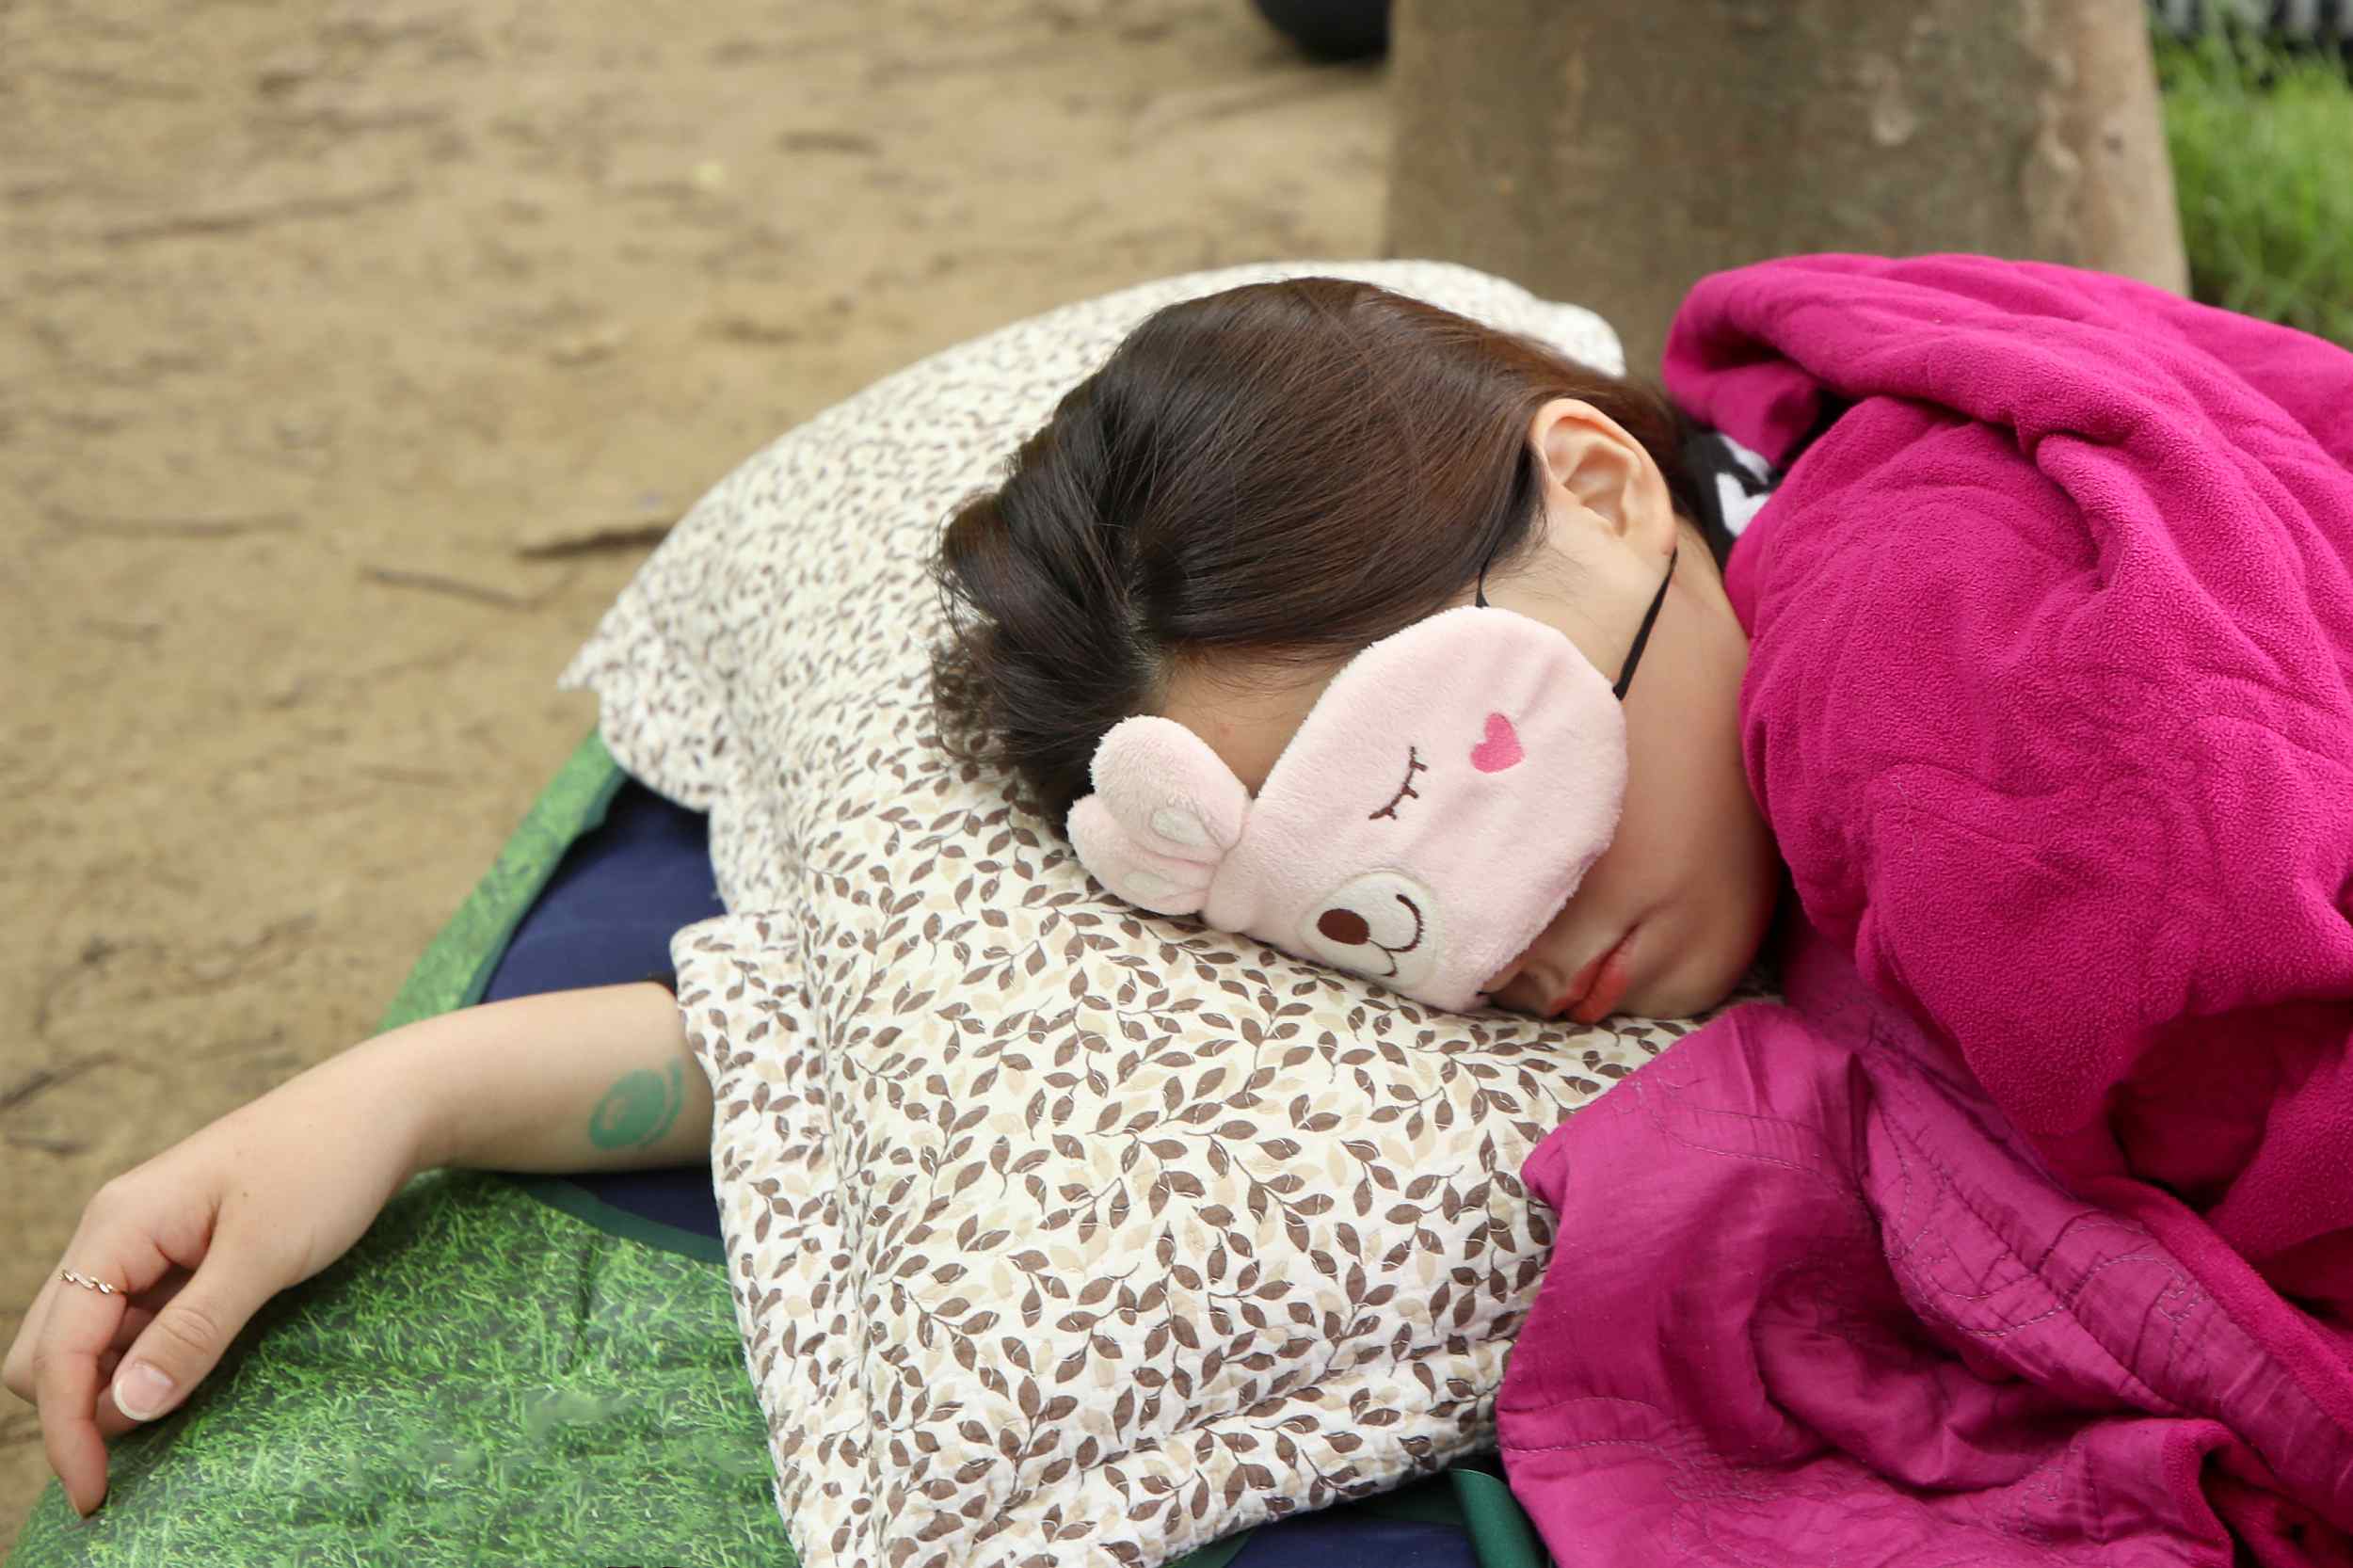 ทำไมคนเกาหลีใต้ นอนไม่หลับ มากที่สุดในโลก นับแสนต้องกินยาช่วยจนติด